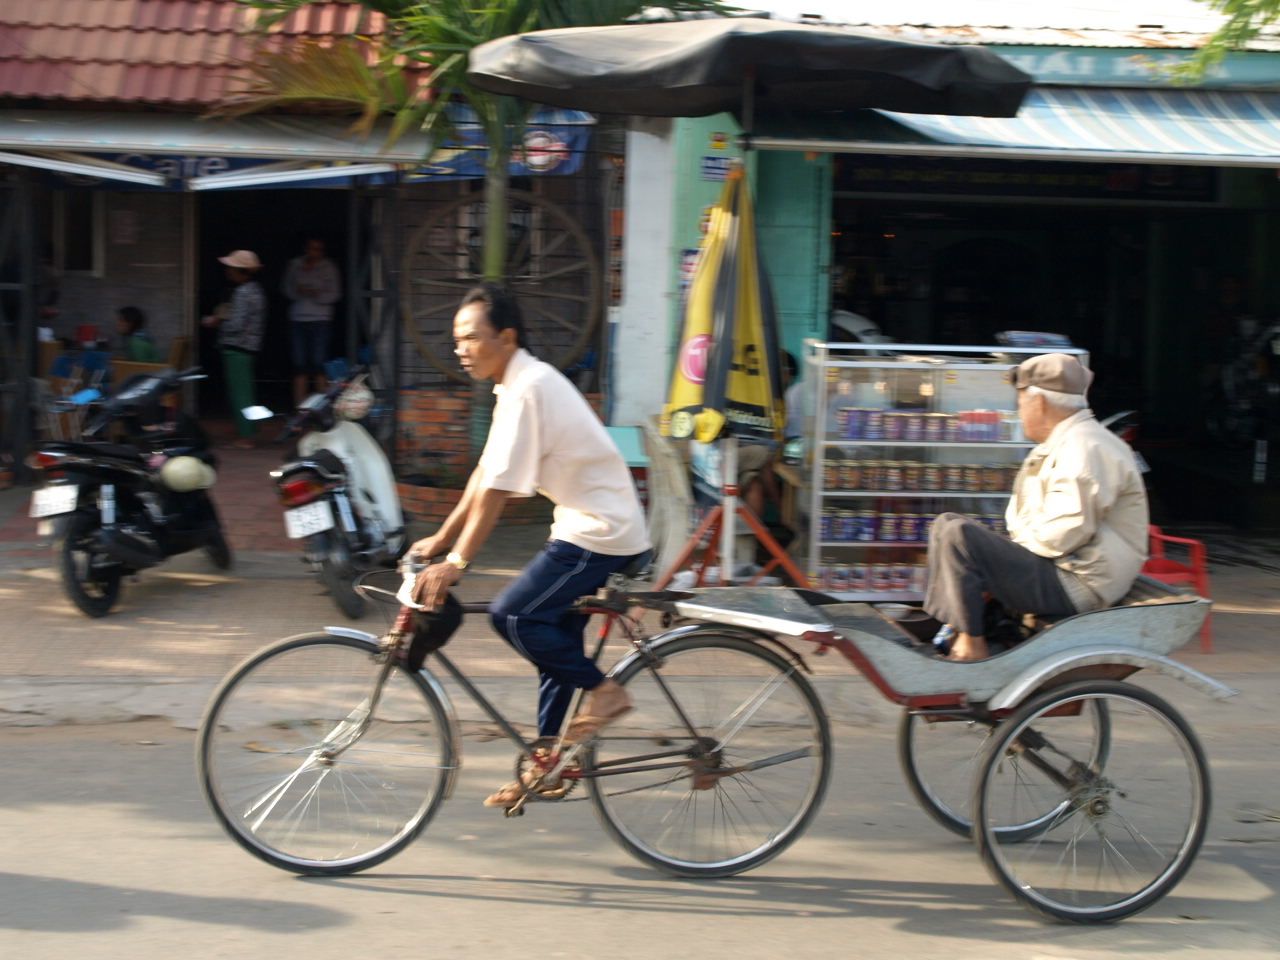 Choses à faire dans la région du delta du Mékong du Vietnam